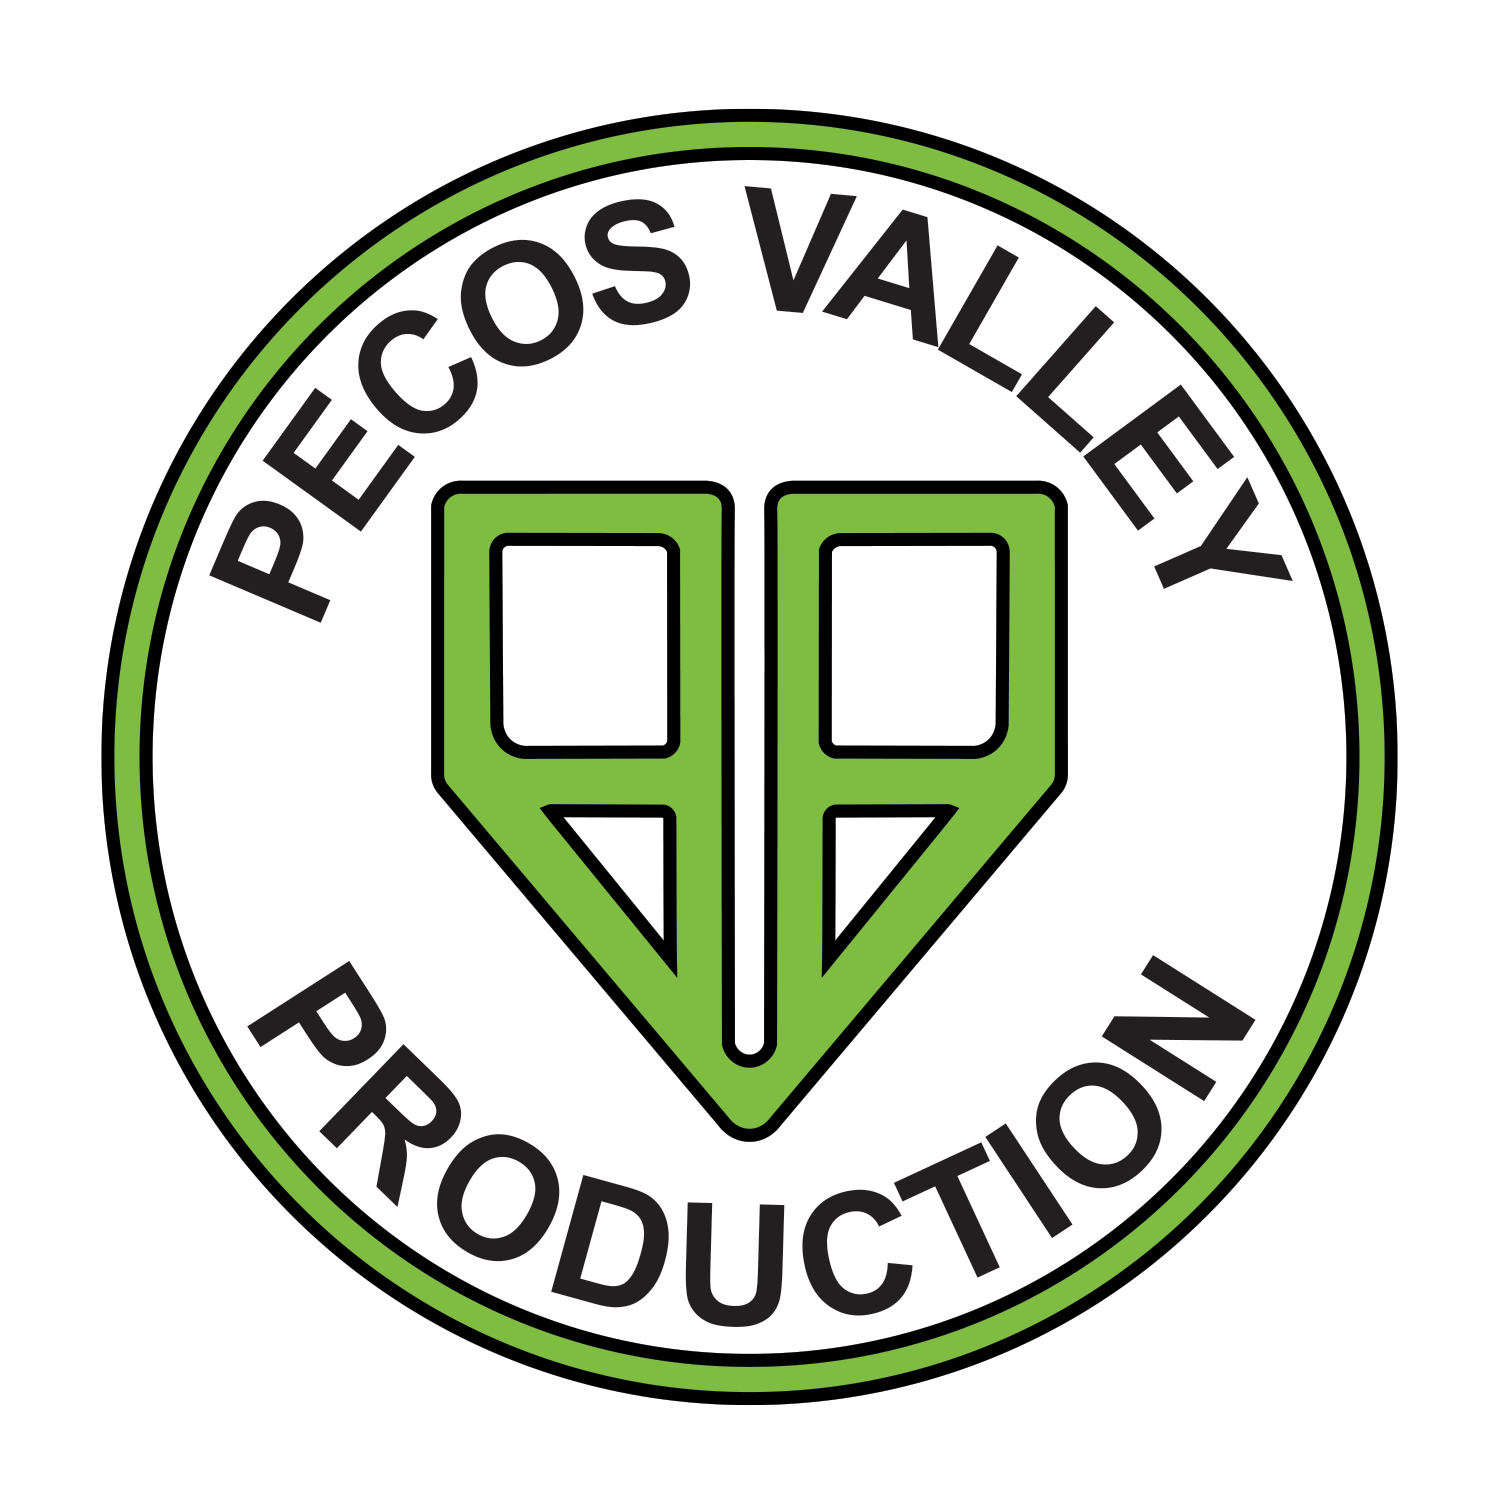 Pecos Valley Production - Portales-logo